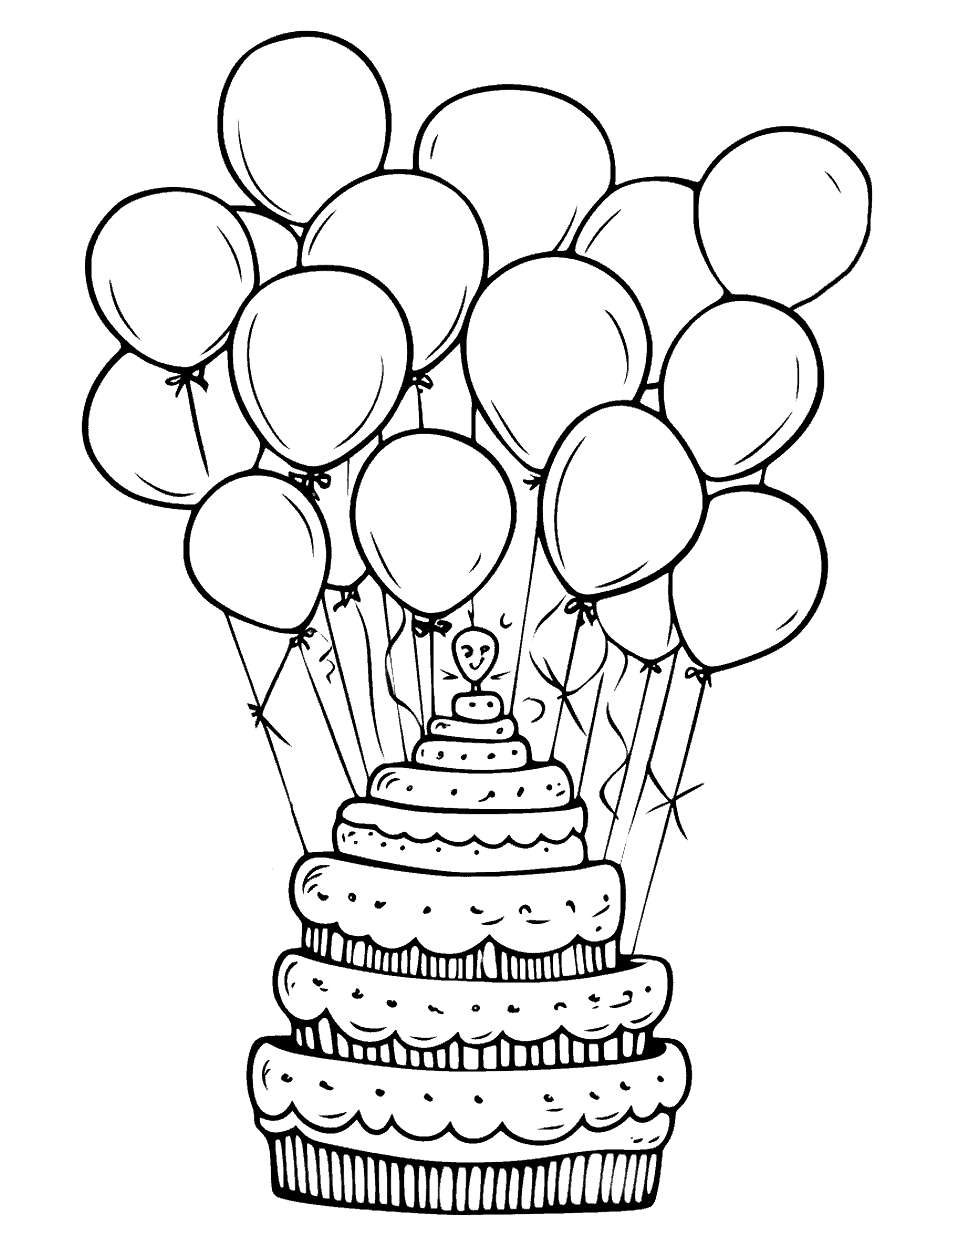 Balloon Bonanza Cake Coloring Page - A cake with a balloon theme.